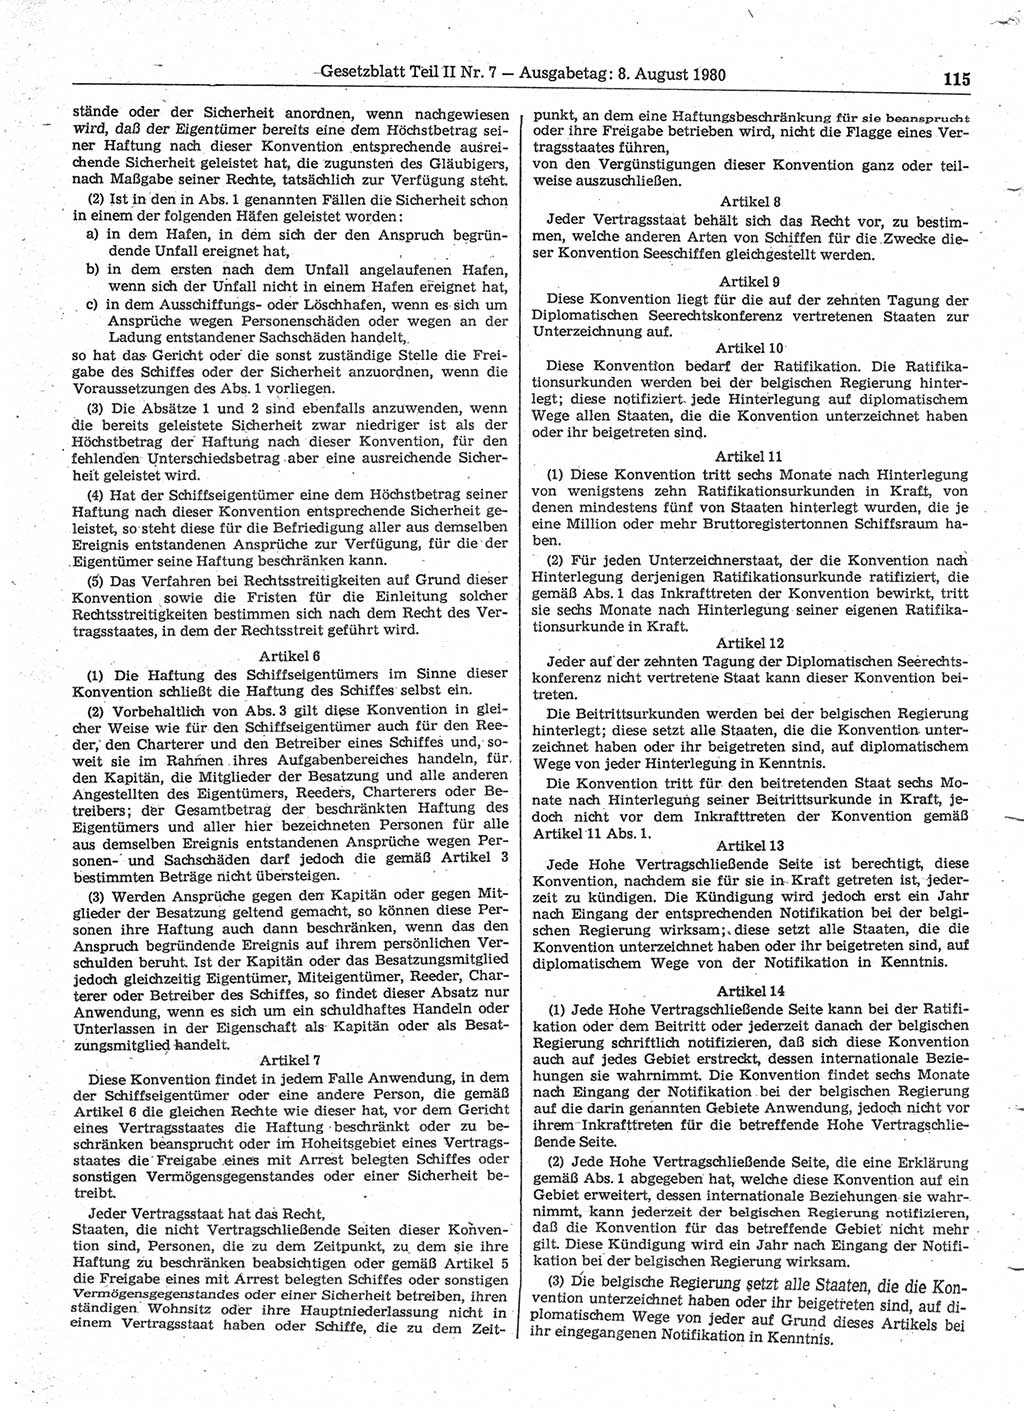 Gesetzblatt (GBl.) der Deutschen Demokratischen Republik (DDR) Teil ⅠⅠ 1980, Seite 115 (GBl. DDR ⅠⅠ 1980, S. 115)